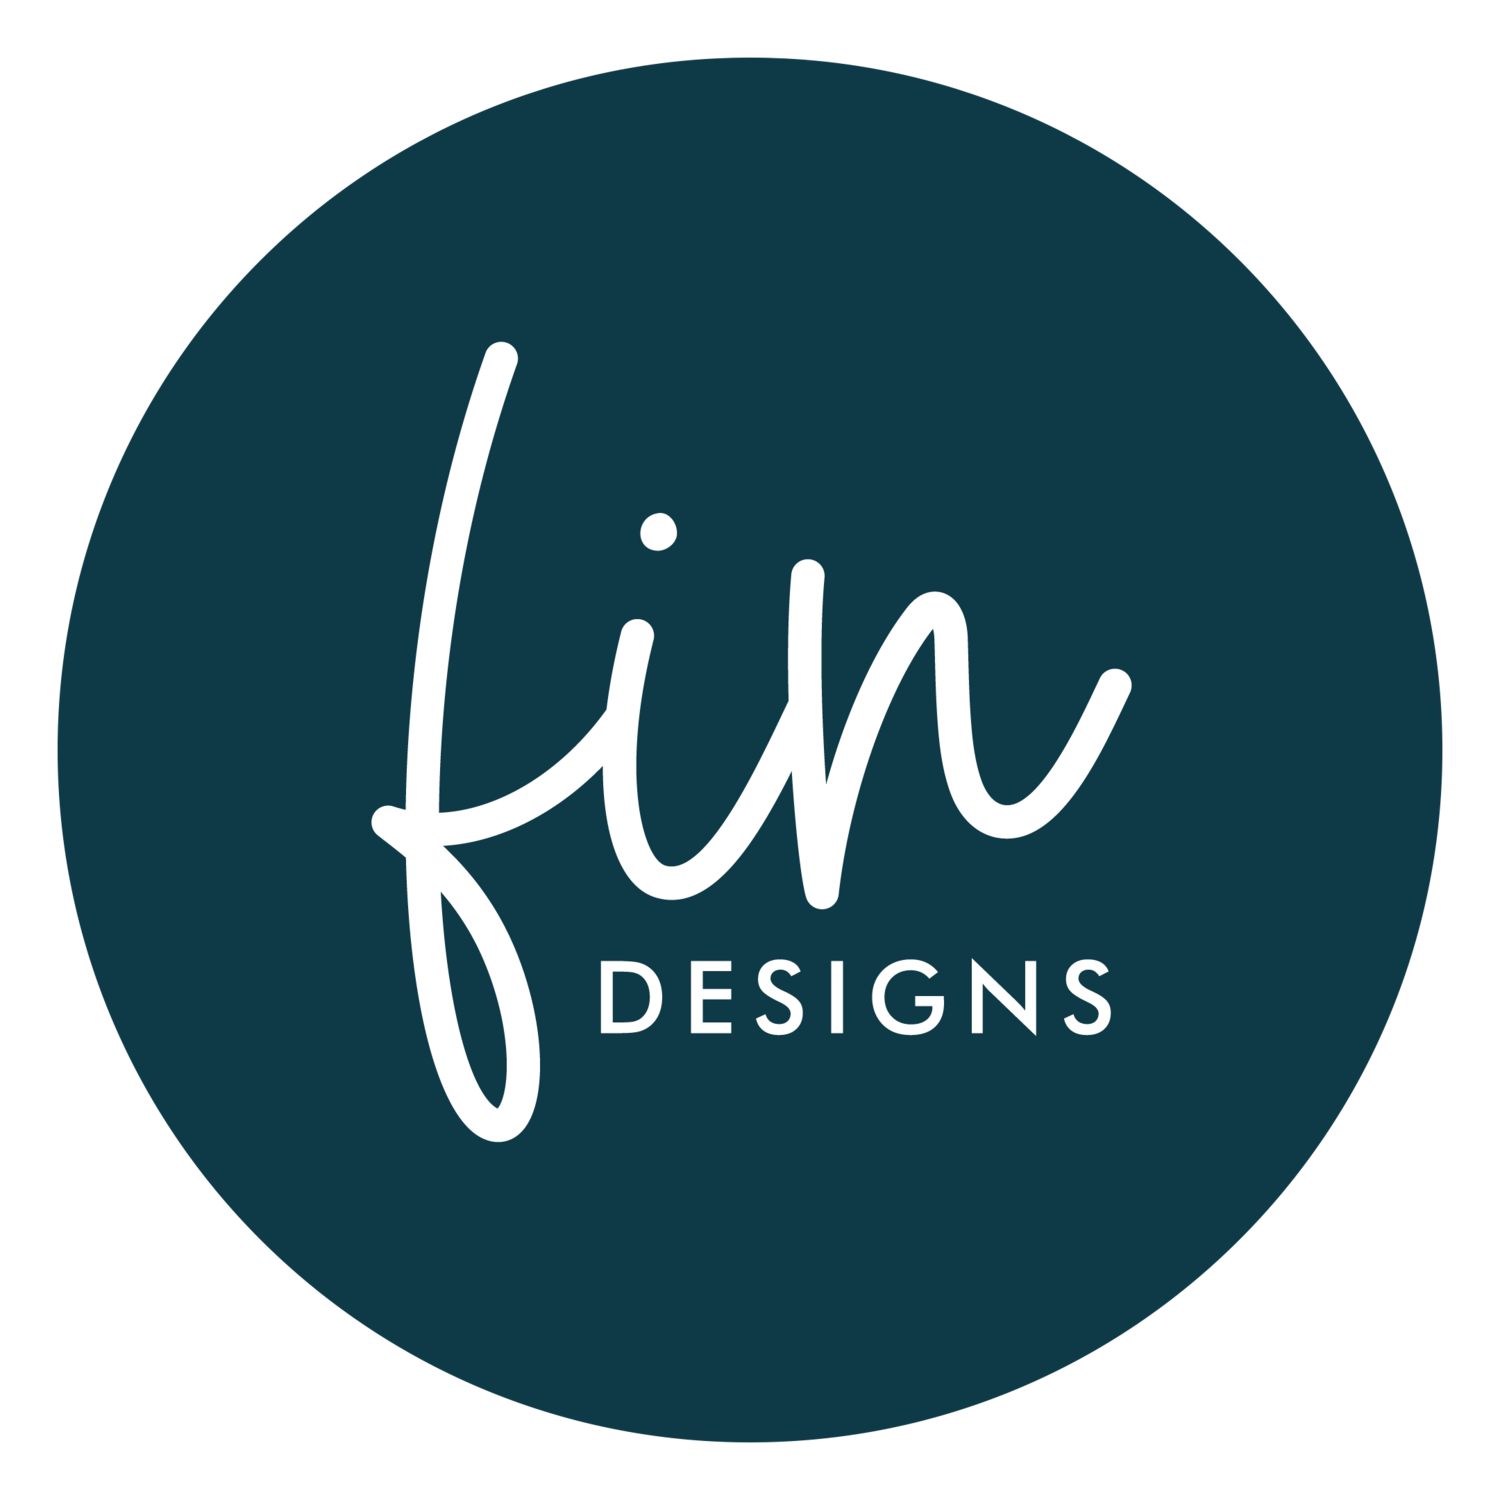 FIN designs